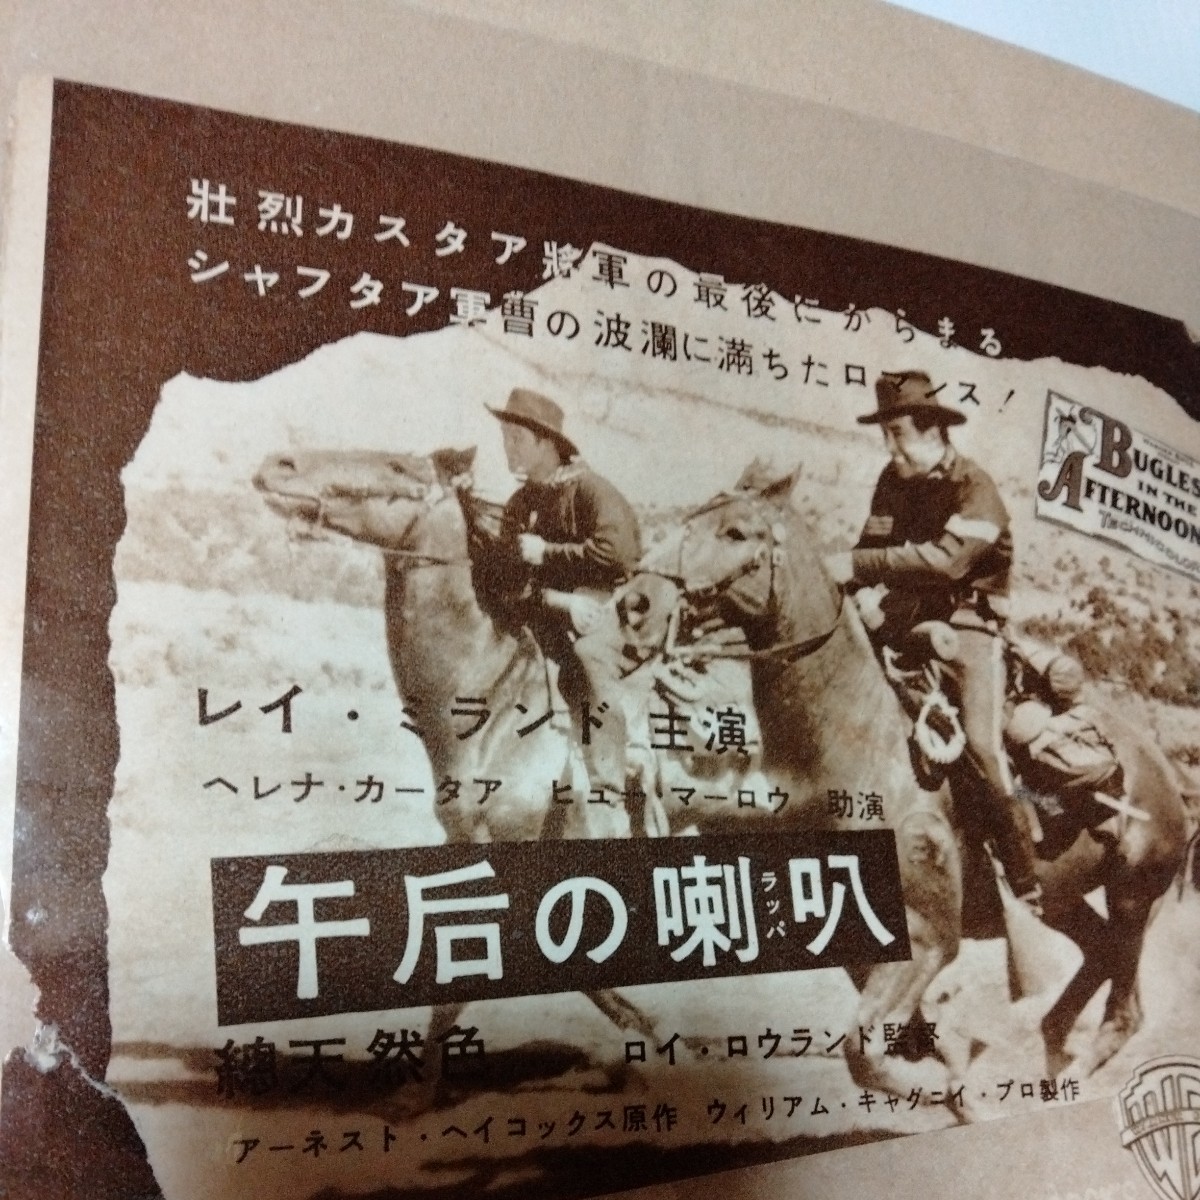 昭和映画ヒッチコックA4ラミネート雑誌切り抜きポスターインテリア広告_画像3